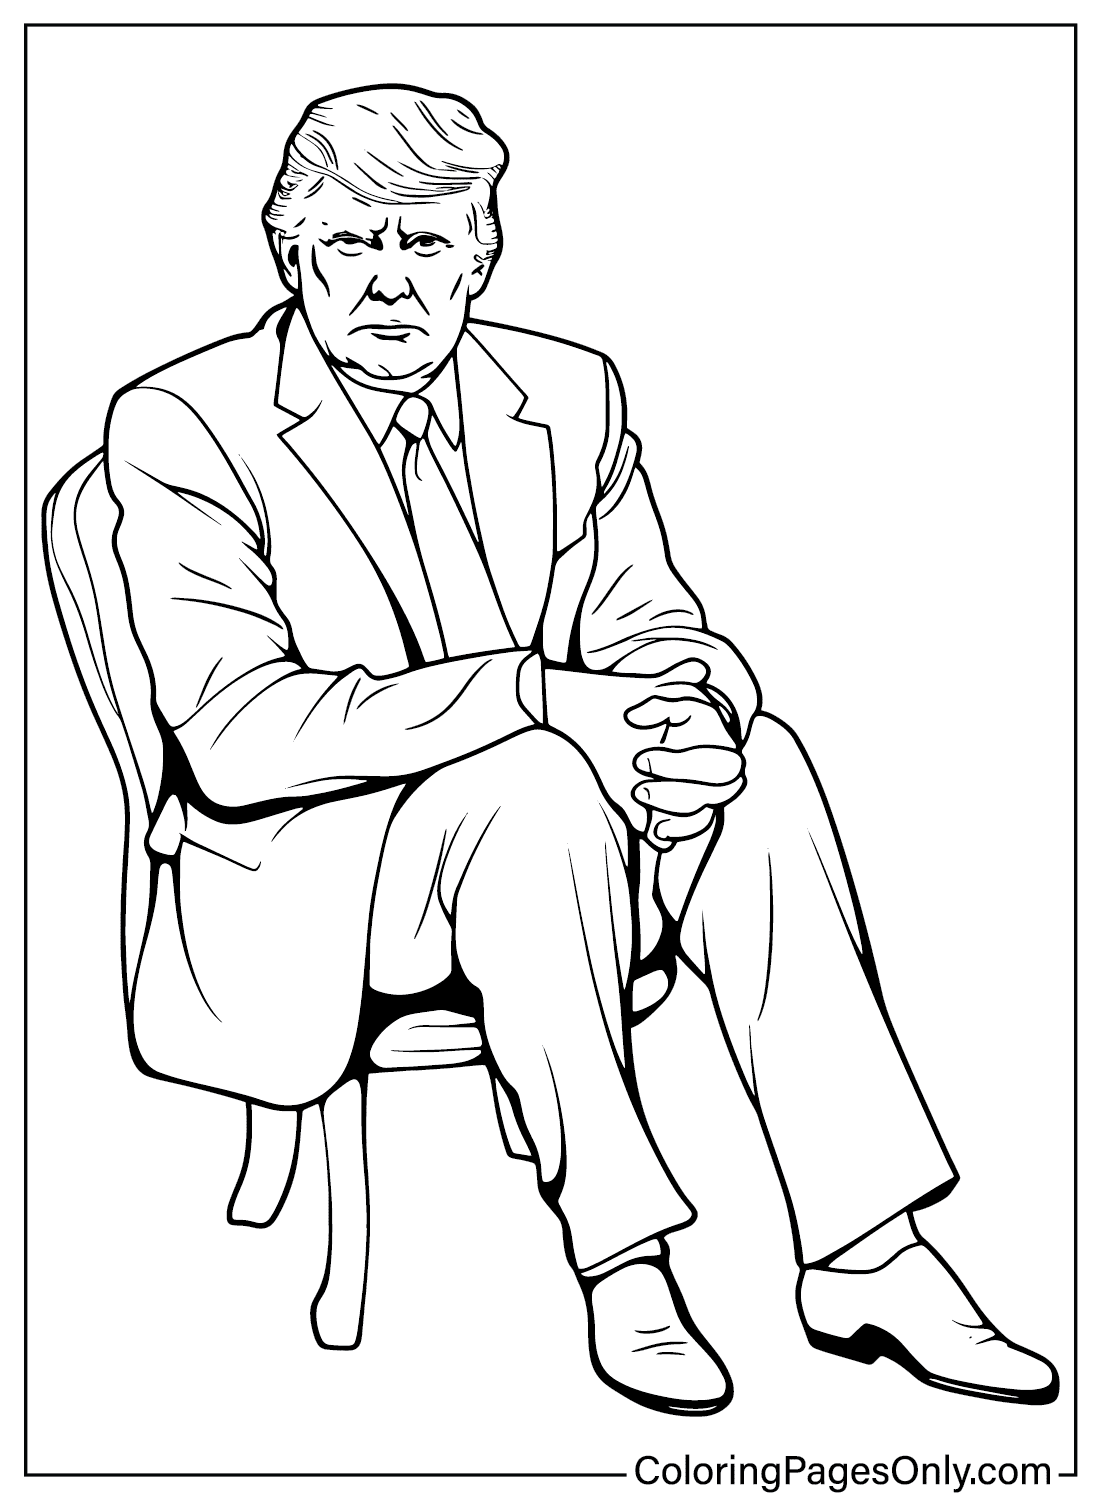 Gratis afdrukbare Donald Trump kleurplaat van Donald Trump